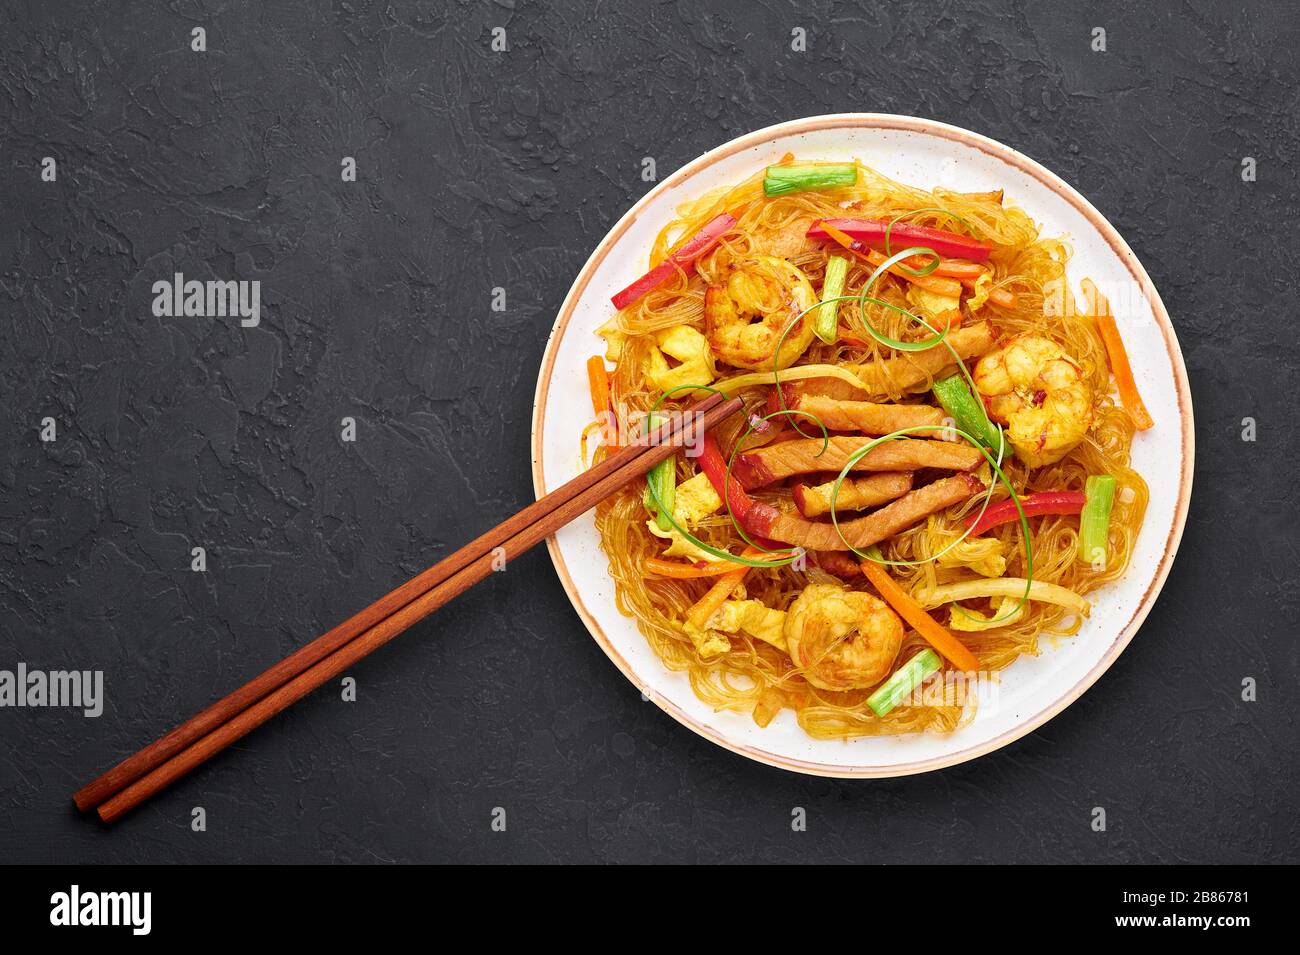 Singapore Mei Fun in bianco piatto su sfondo ardesia scuro. Singapore Noodles è un piatto di cucina cinese con tagliatelle di riso, gamberi, maiale char siu, carota, Foto Stock